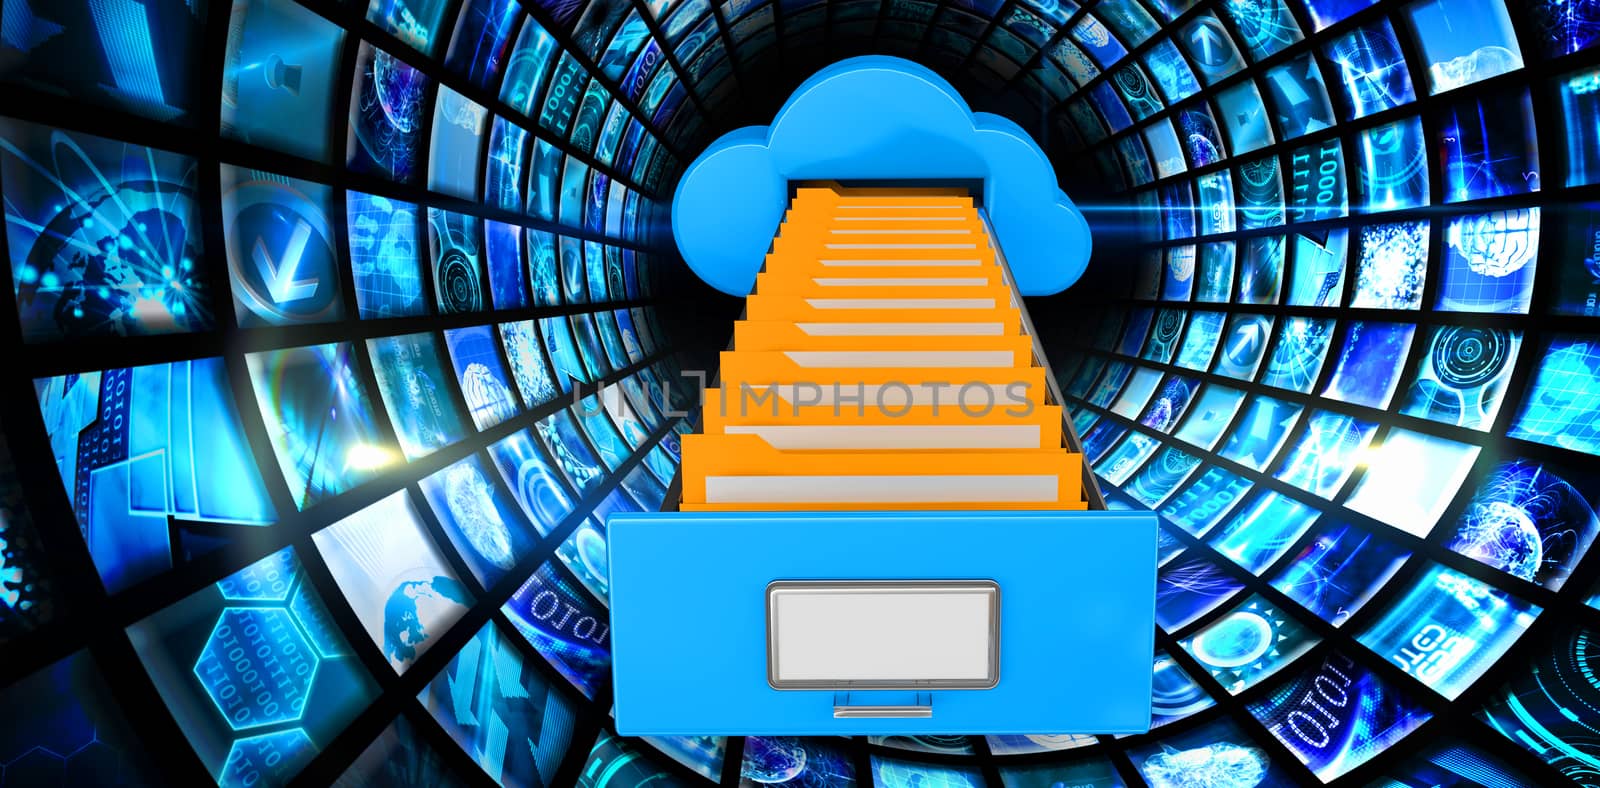 Cloud computing drawer against vortex of digital screens in blue